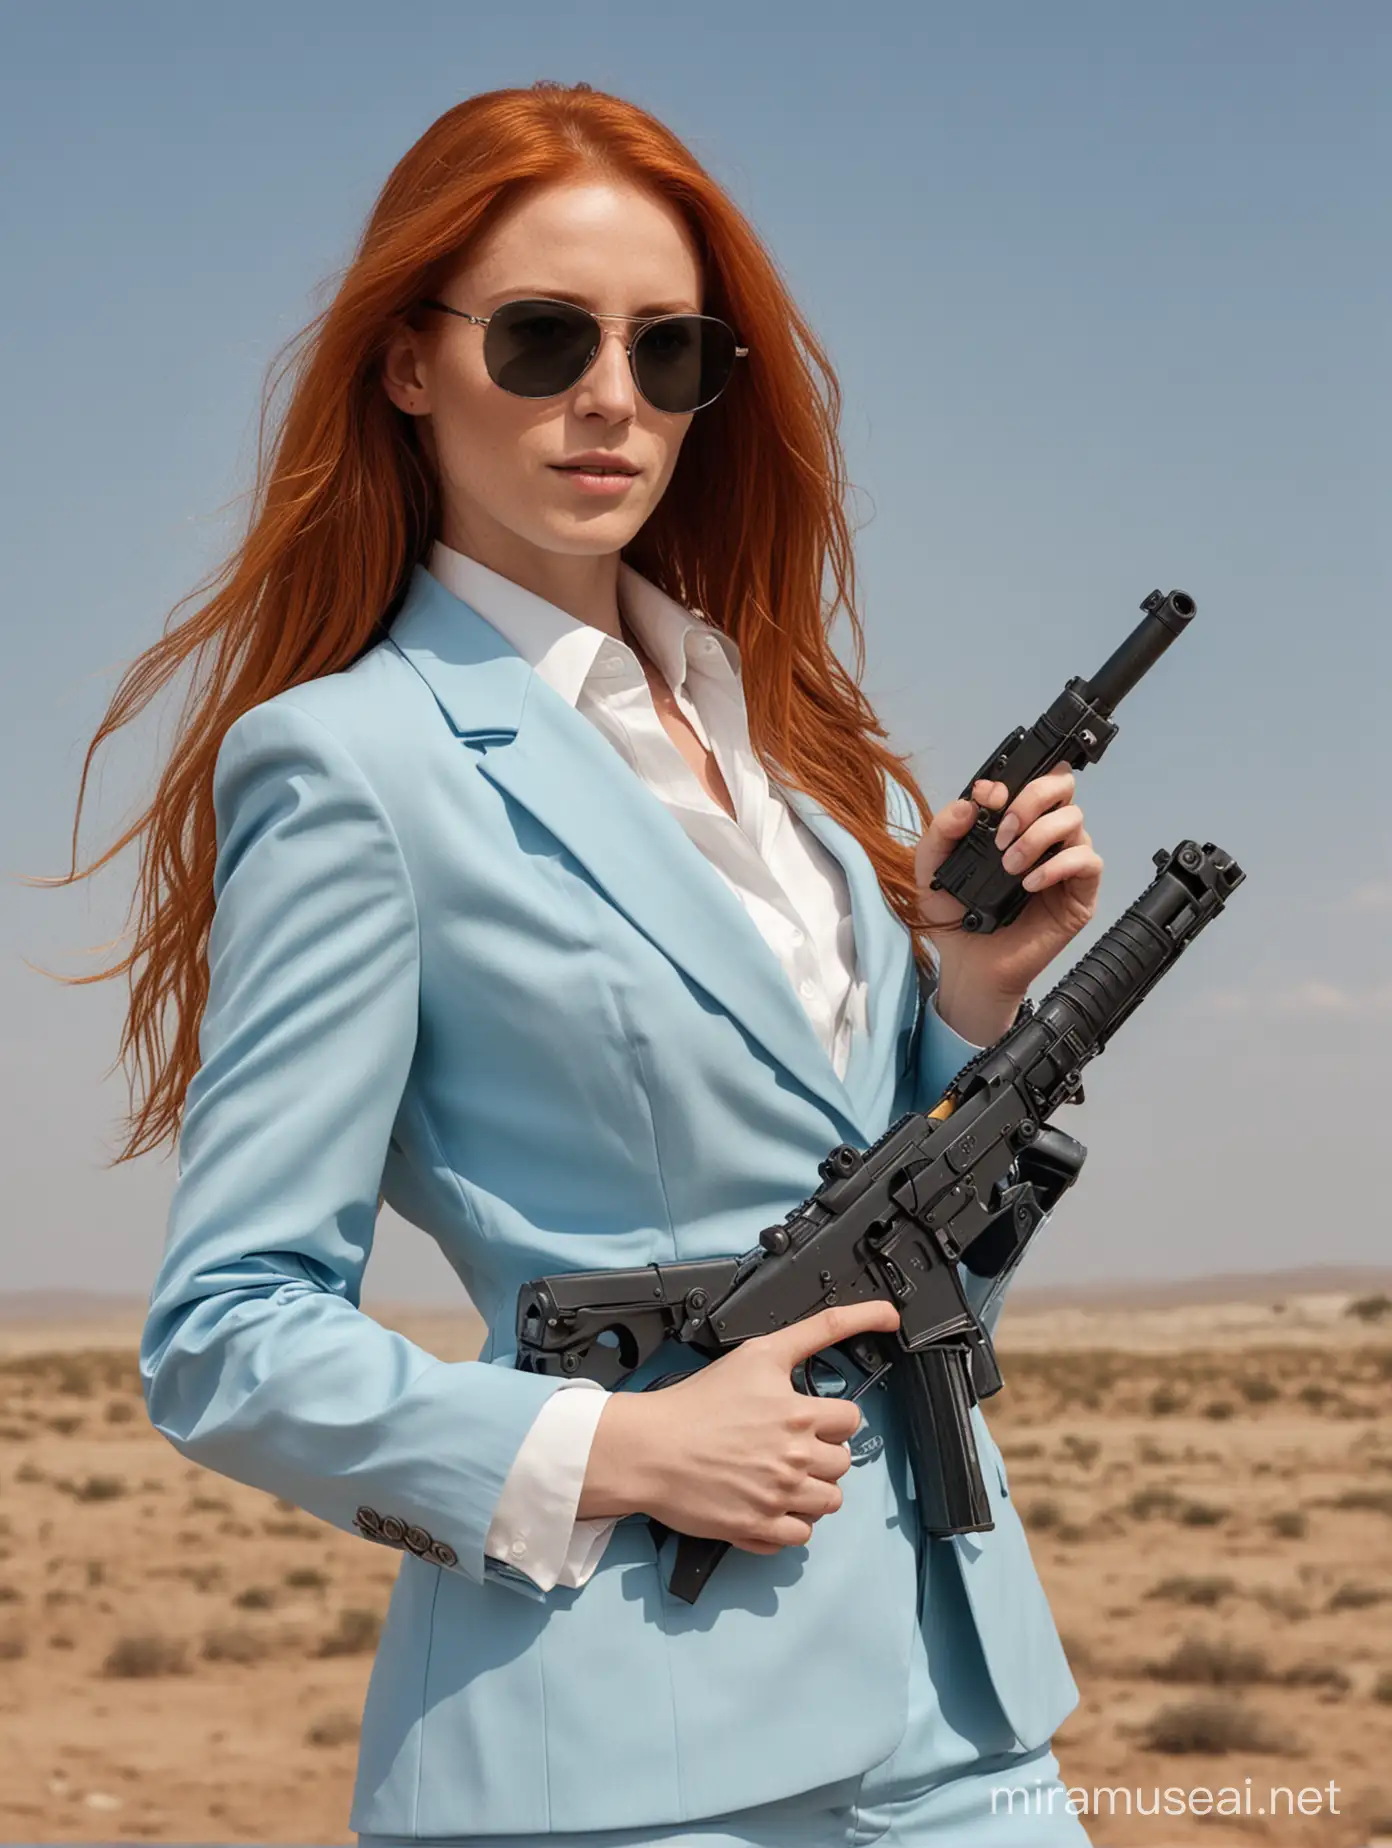 Fierce RedHaired Woman in Sky Blue Suit Wielding Machine Gun